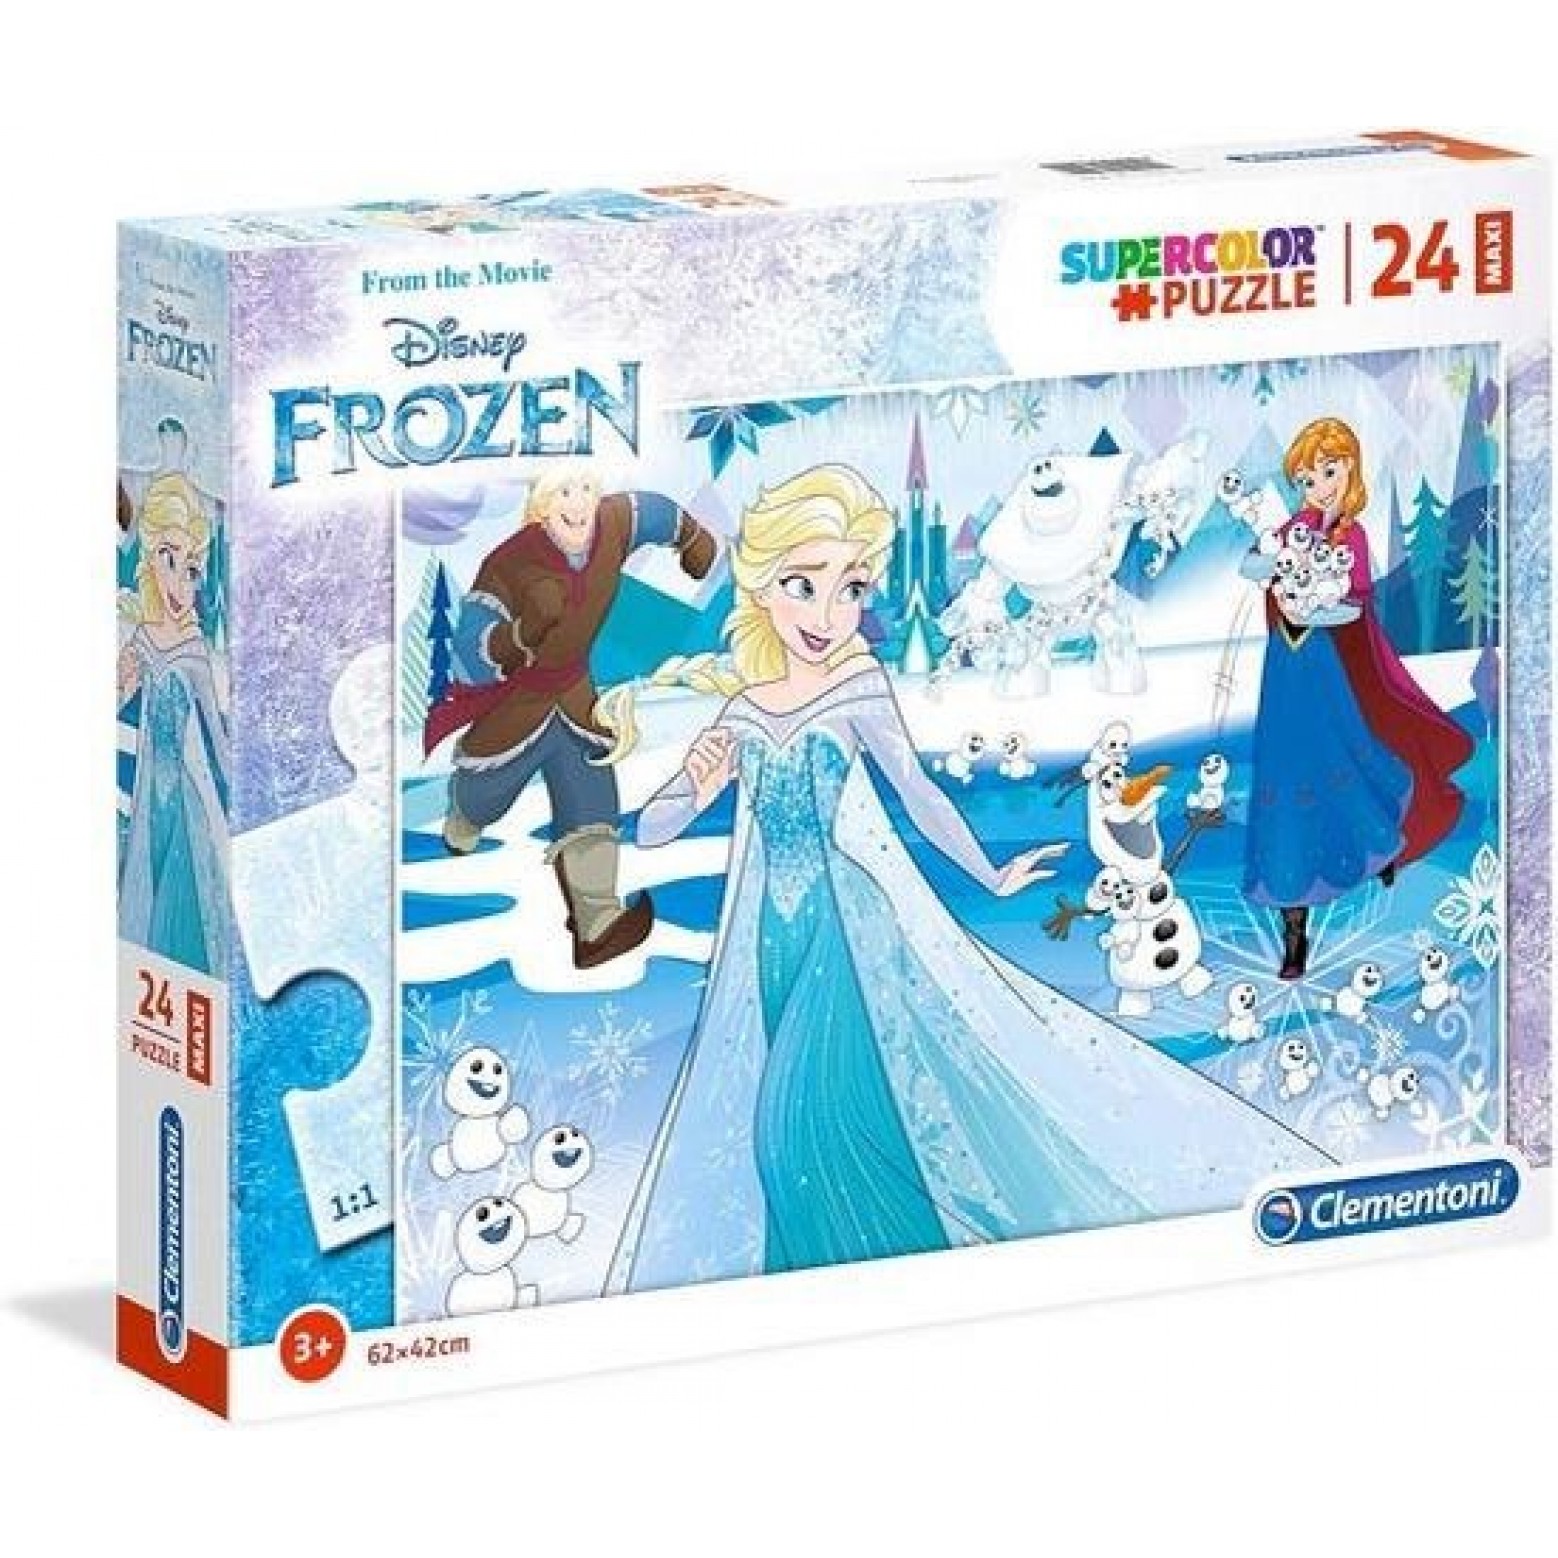 Disney Frozen Maxi puzzel 24 stukjes  62x42 cm